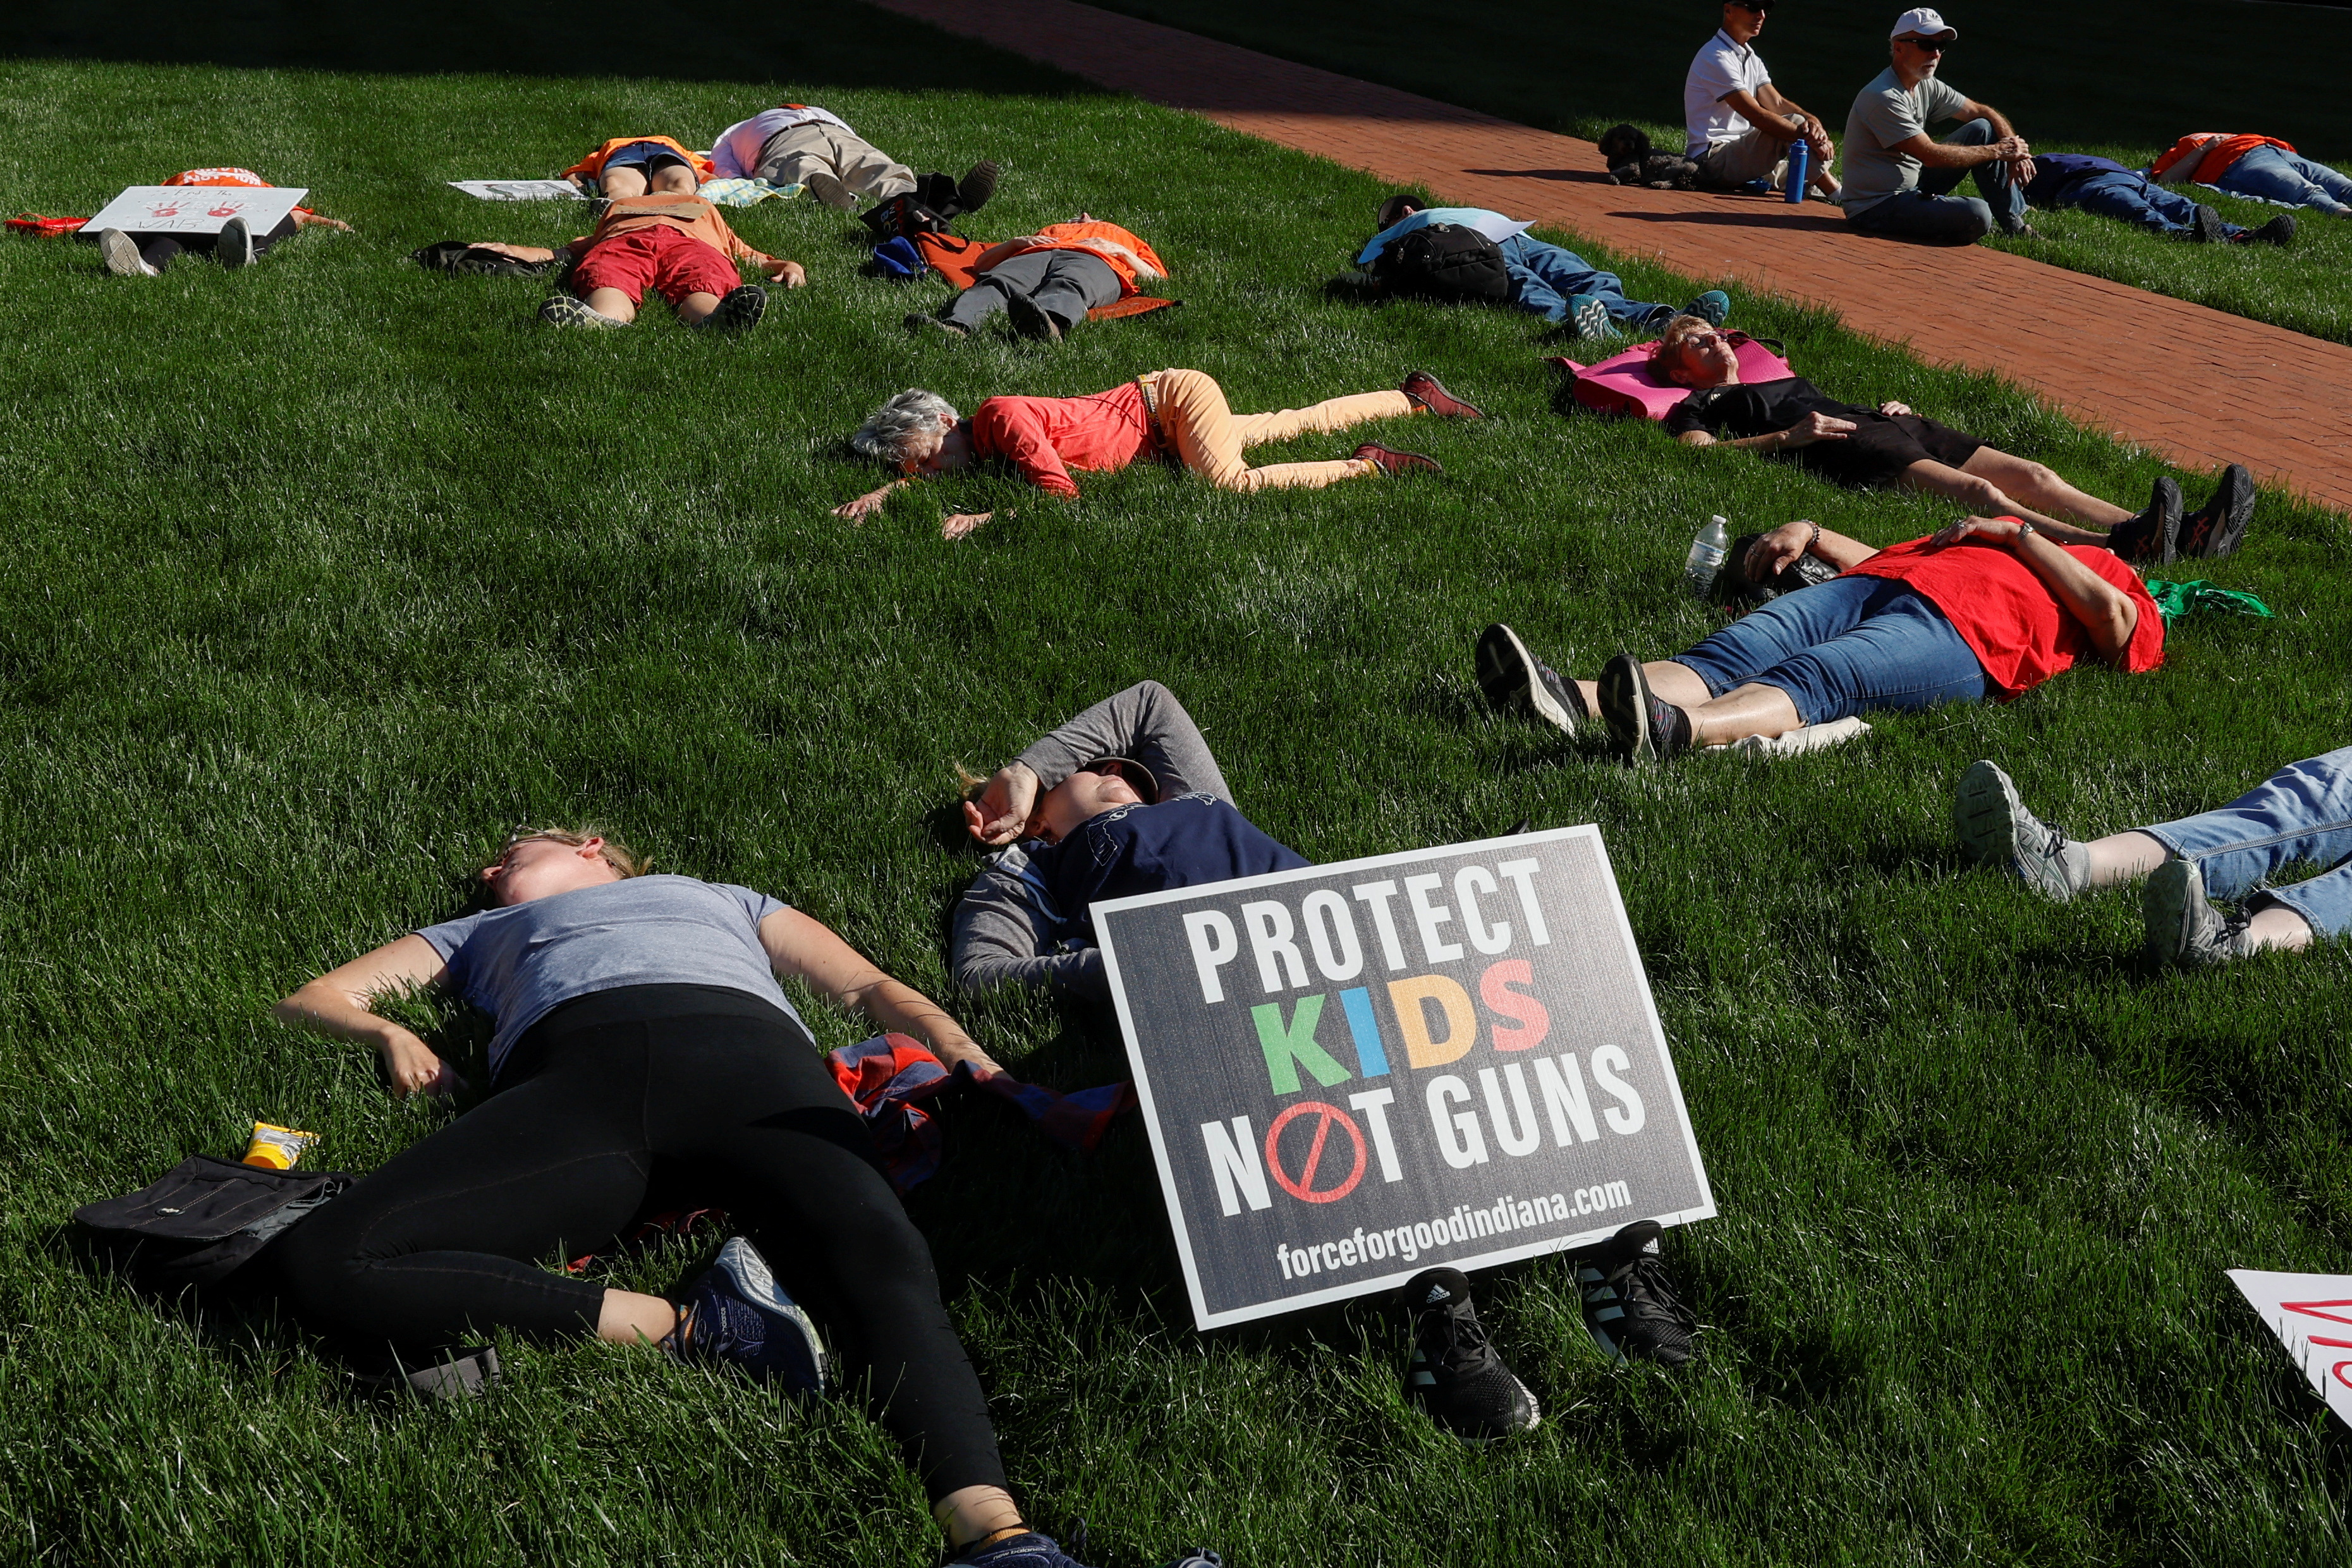 전미총기협회(NRA) 연례 행사를 반대하는 시위대가 15일 미국 인디애나주 인디애나폴리스 컨벤션센터 밖에서 반대 퍼포먼스를 하고 있다. 로이터 연합뉴스